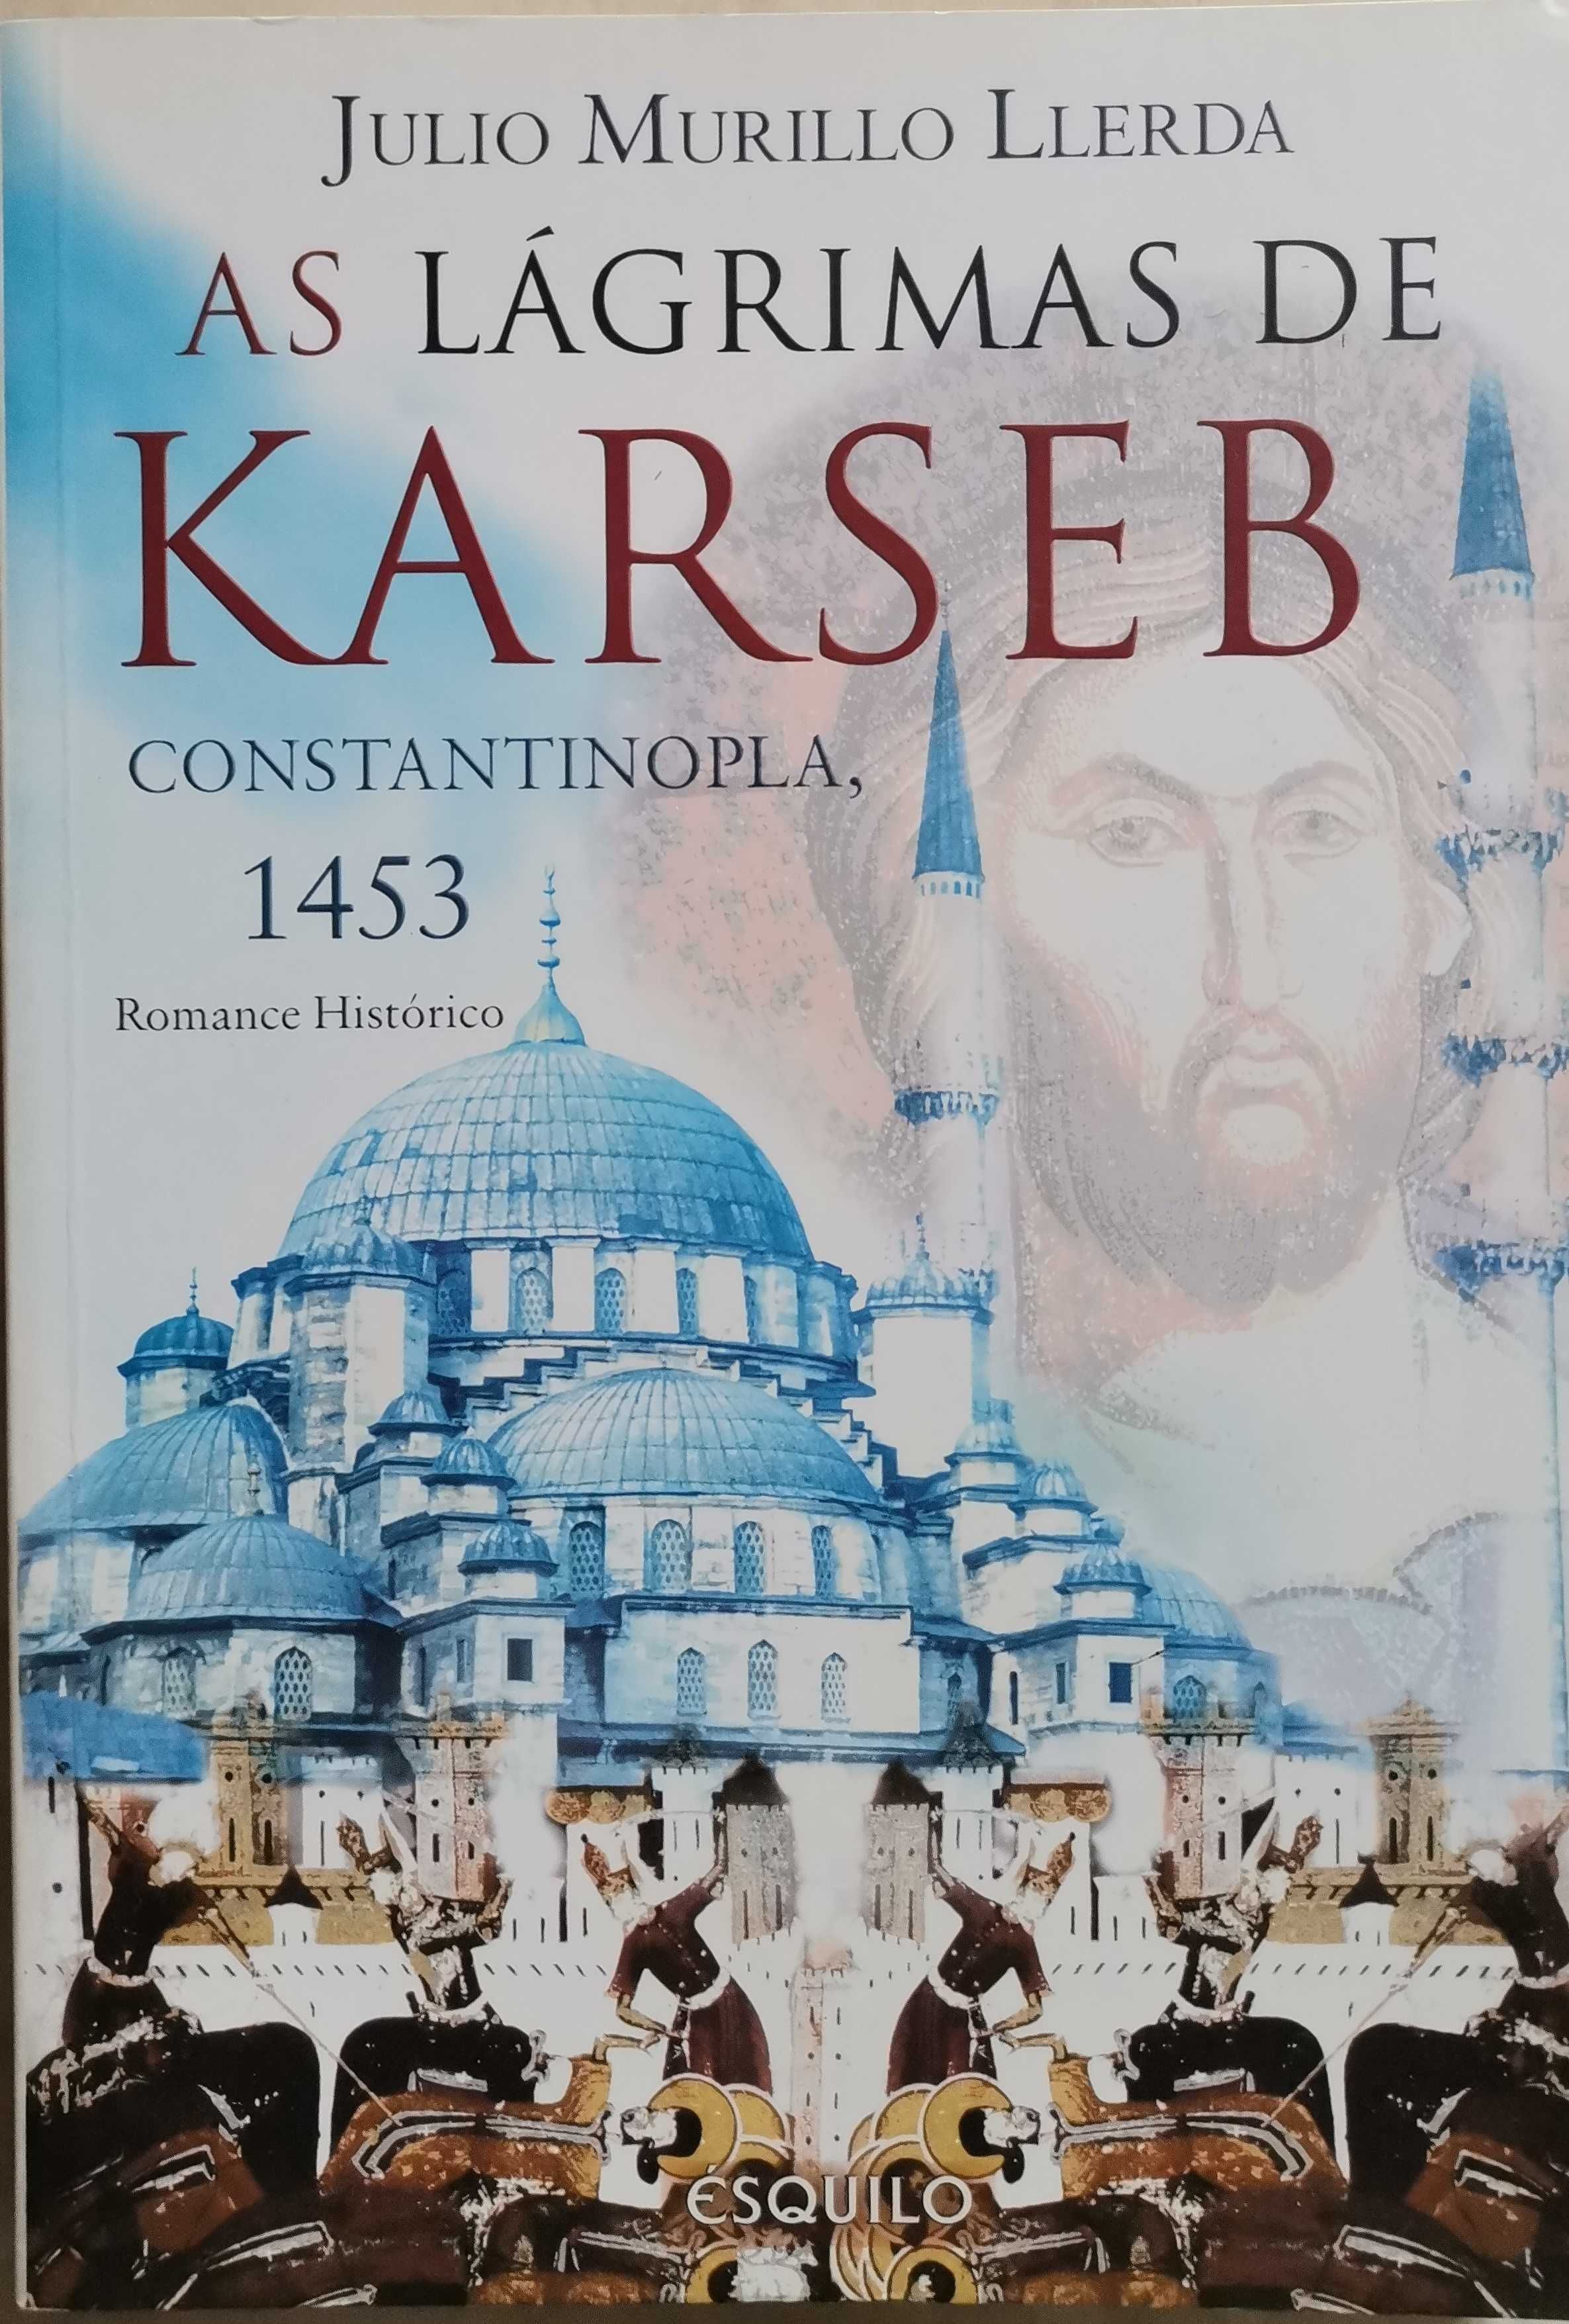 Portes Grátis - As Lágrimas de Karseb
Consantinopla 1453